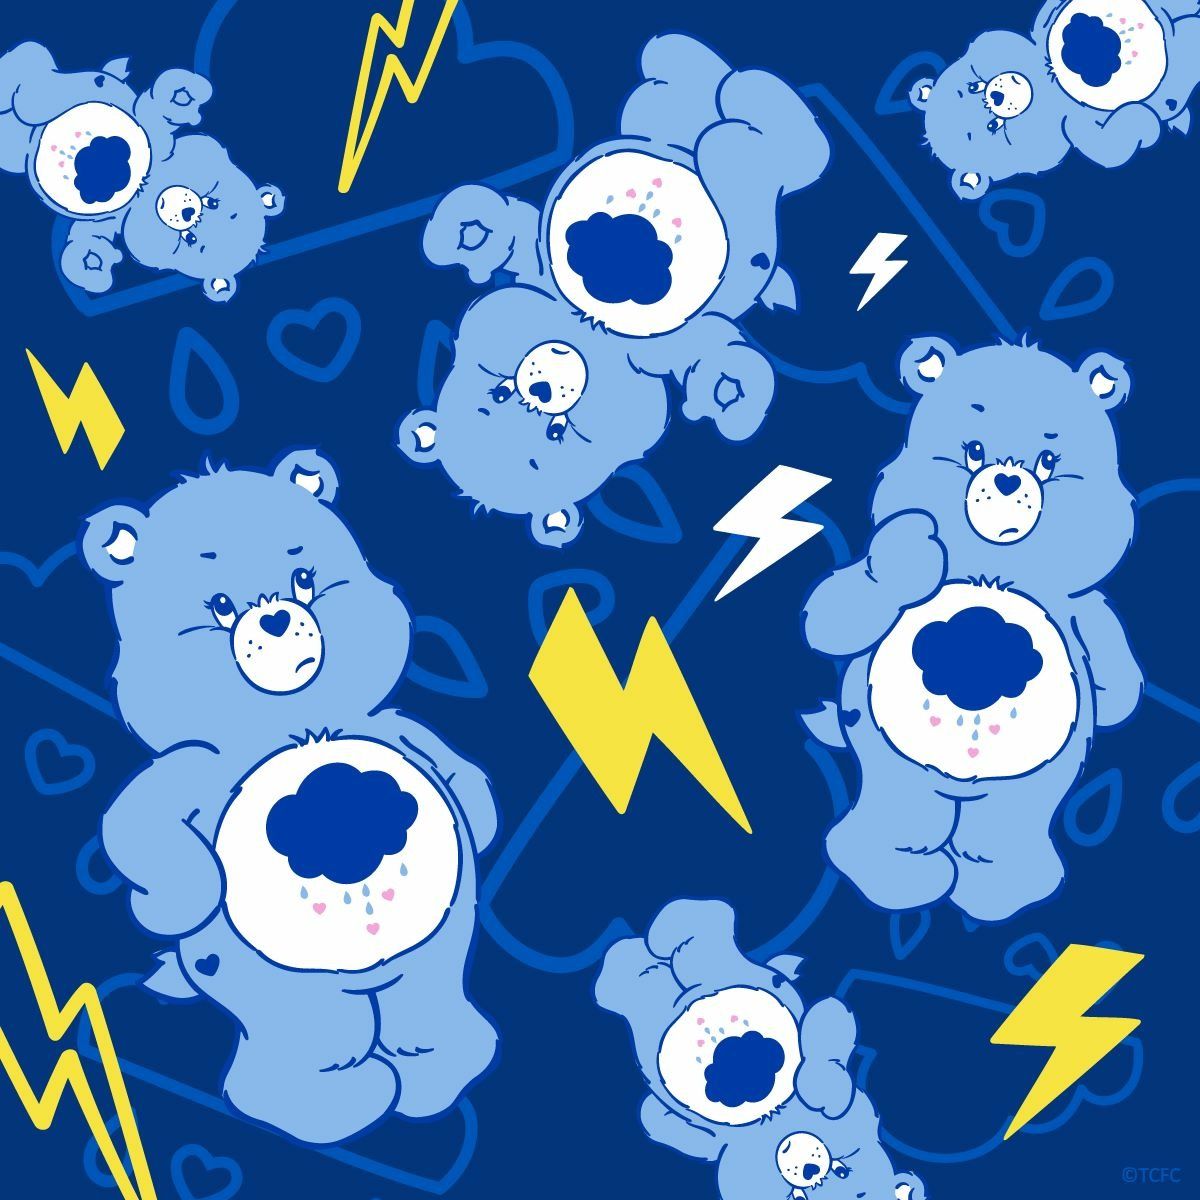 Care Bear Wallpaper Grumpy Cute Cartoon